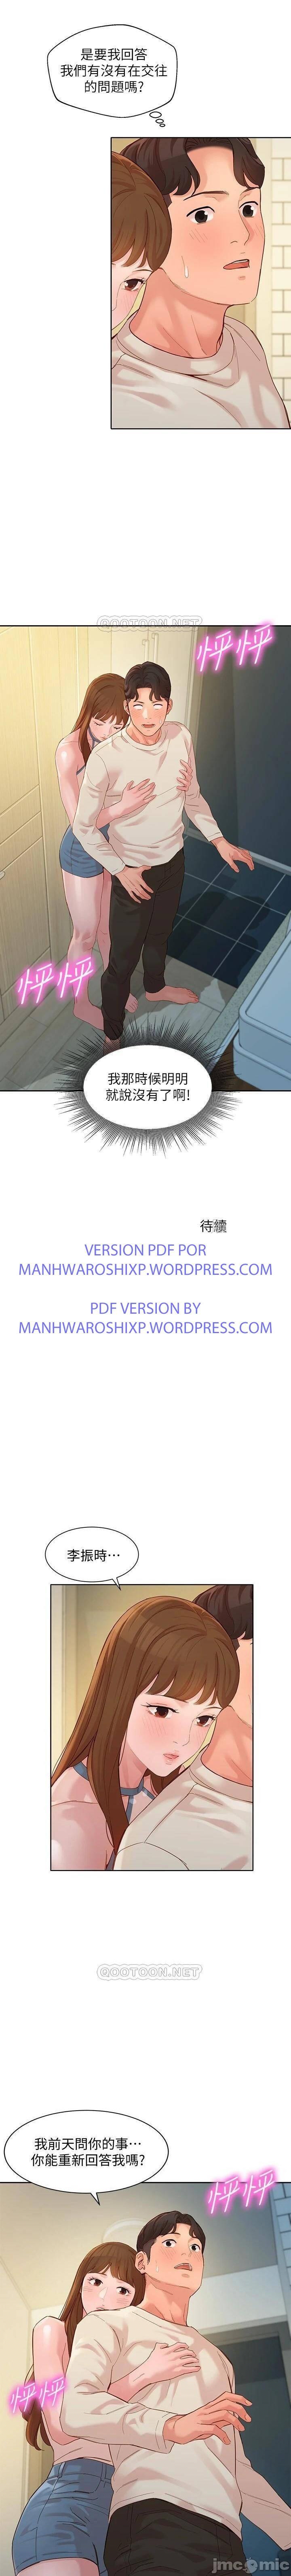 女神寫真 31-54 CHI manhwaroshi.blogspot.com 241